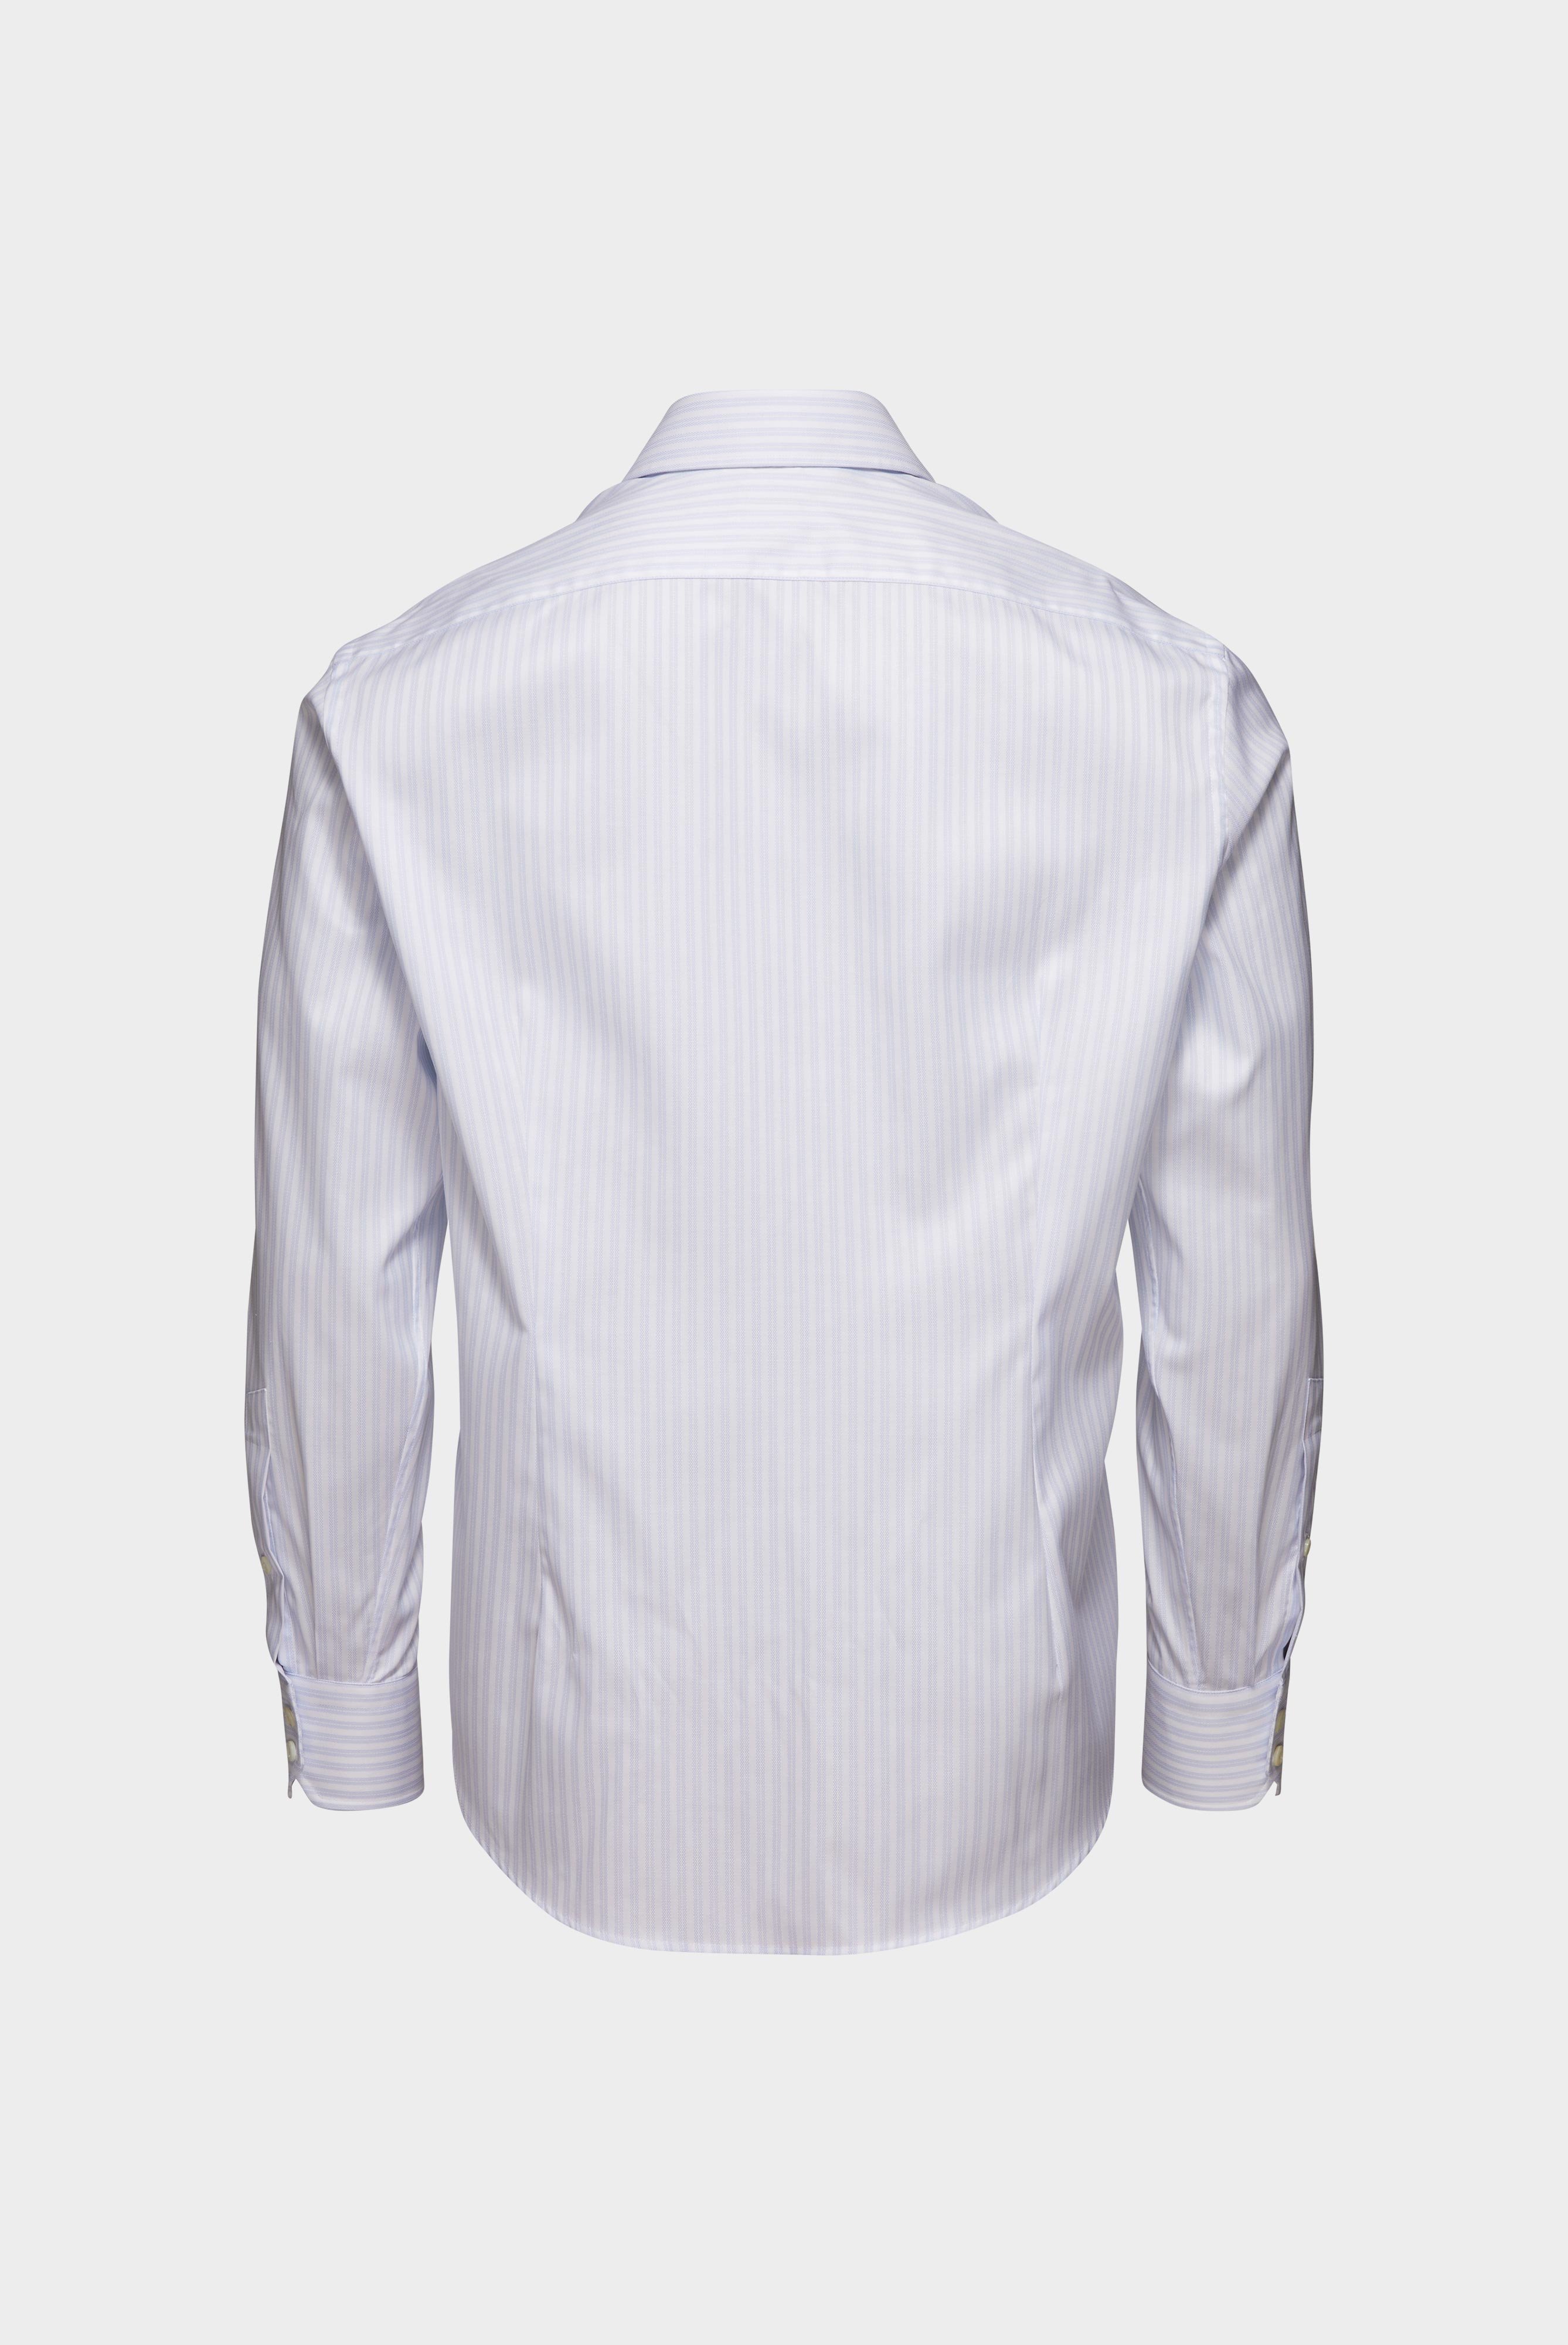 Easy Iron Shirts+Striped Wrinkle Free Shirt Slim Fit+20.2019.BQ.161106.007.38